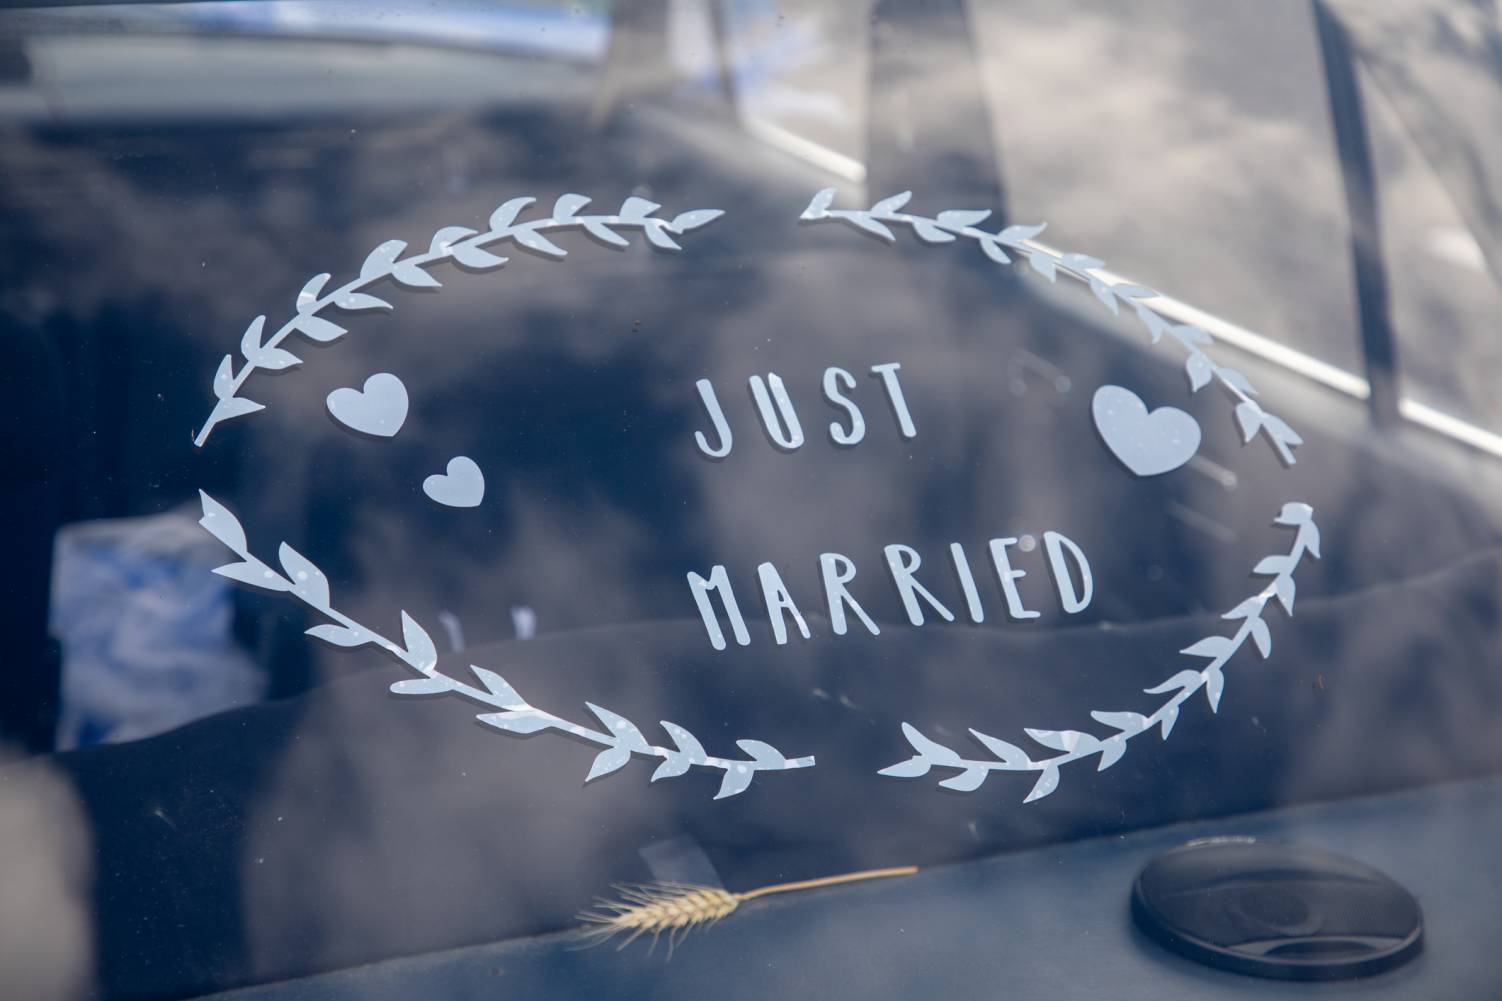 autocollant just married sur la voiture des mariés